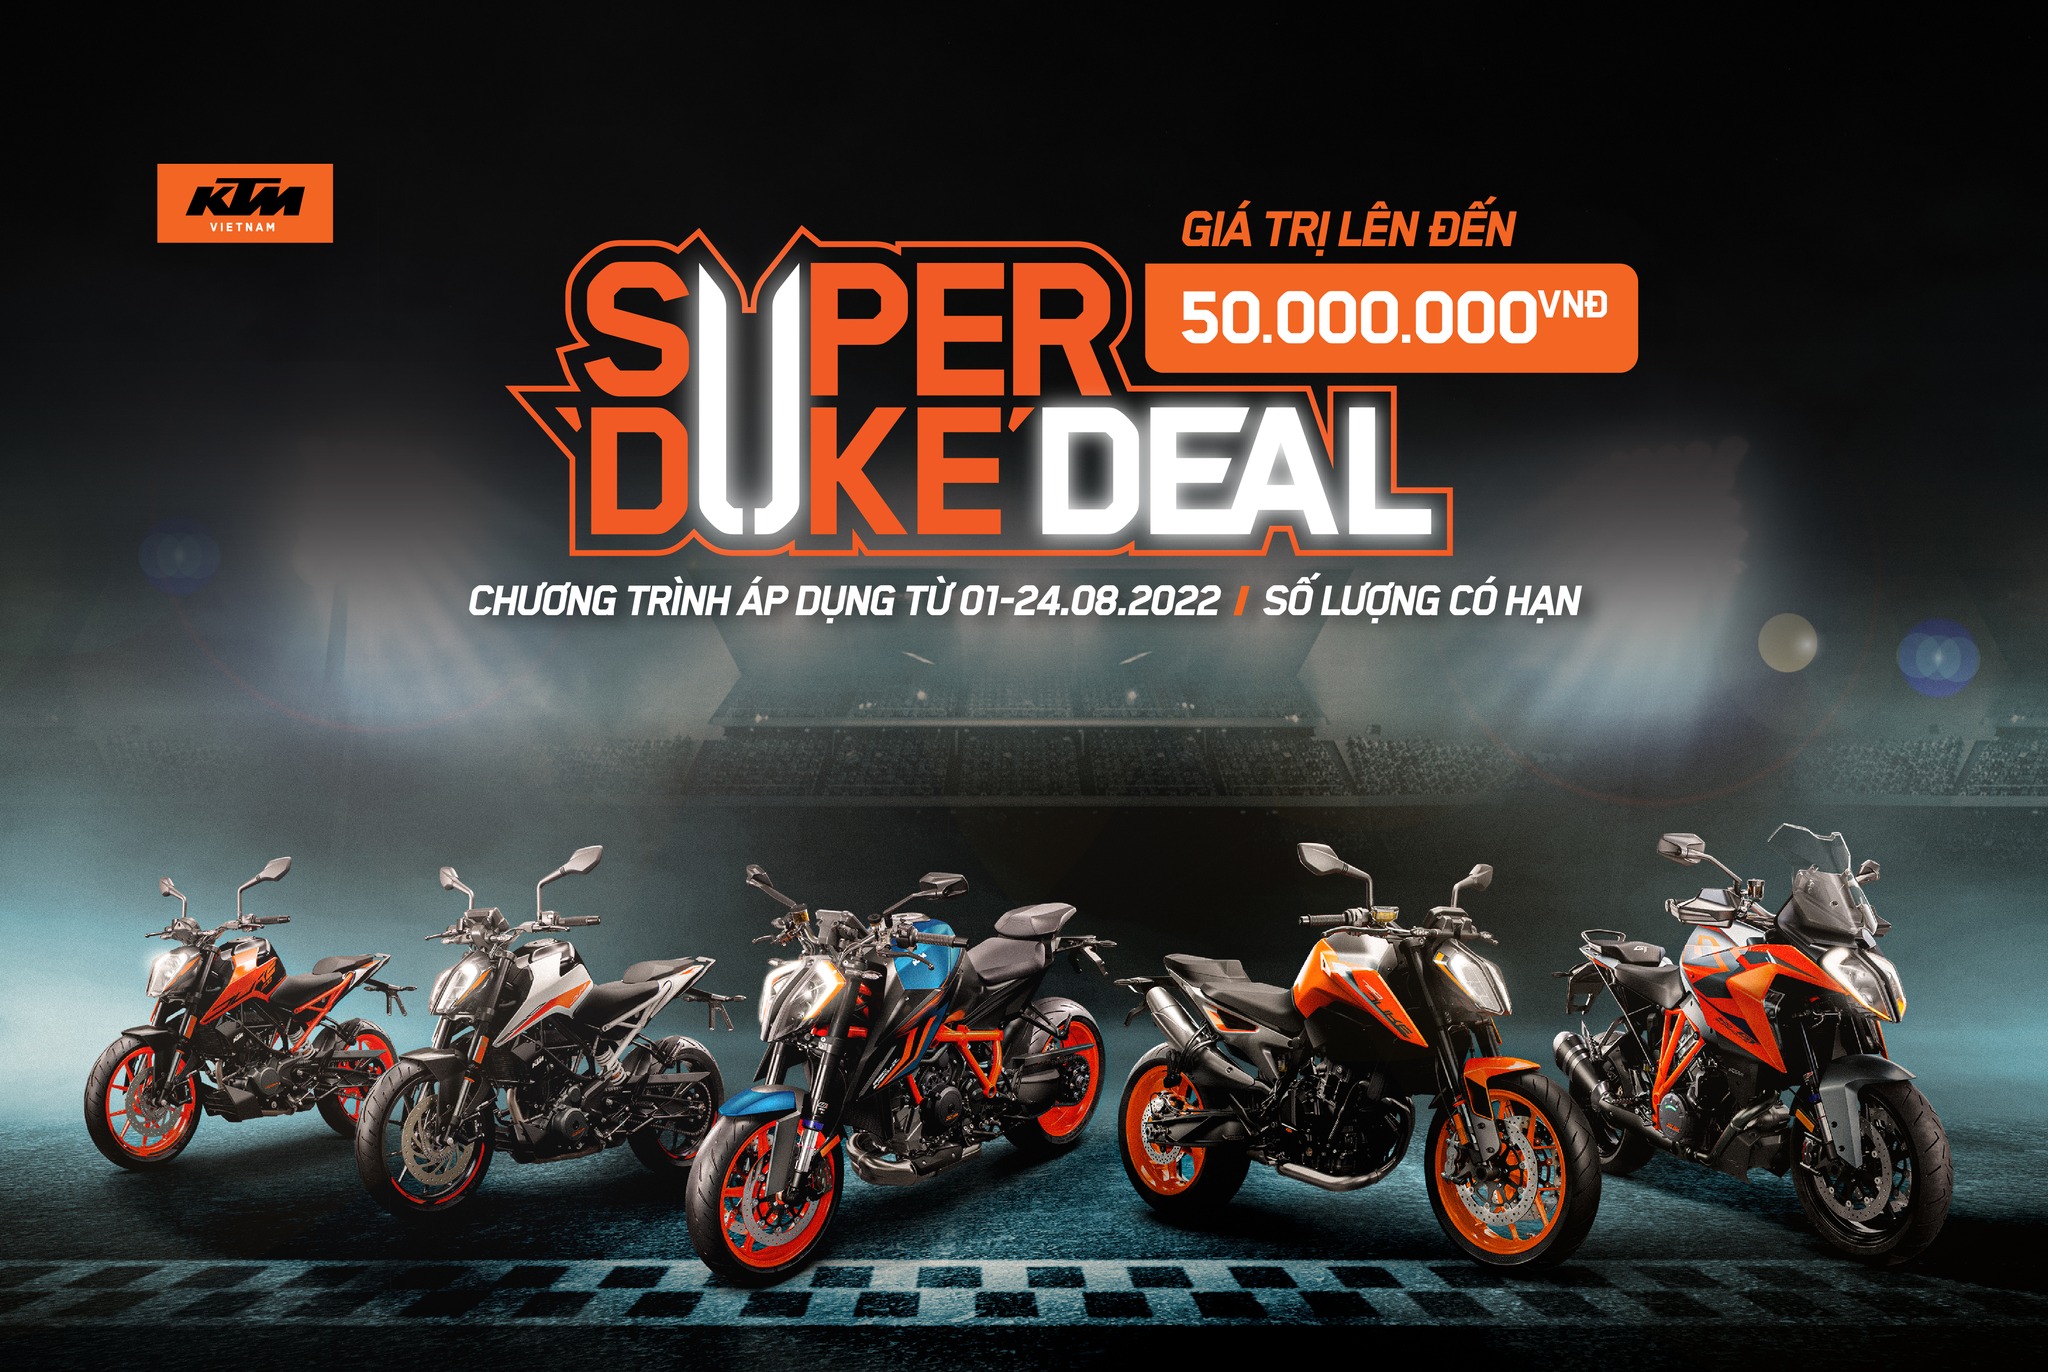 SUPER DUKE DEAL - Chương trình siêu ưu đãi giá xe KTM Duke với số lượng giới hạn